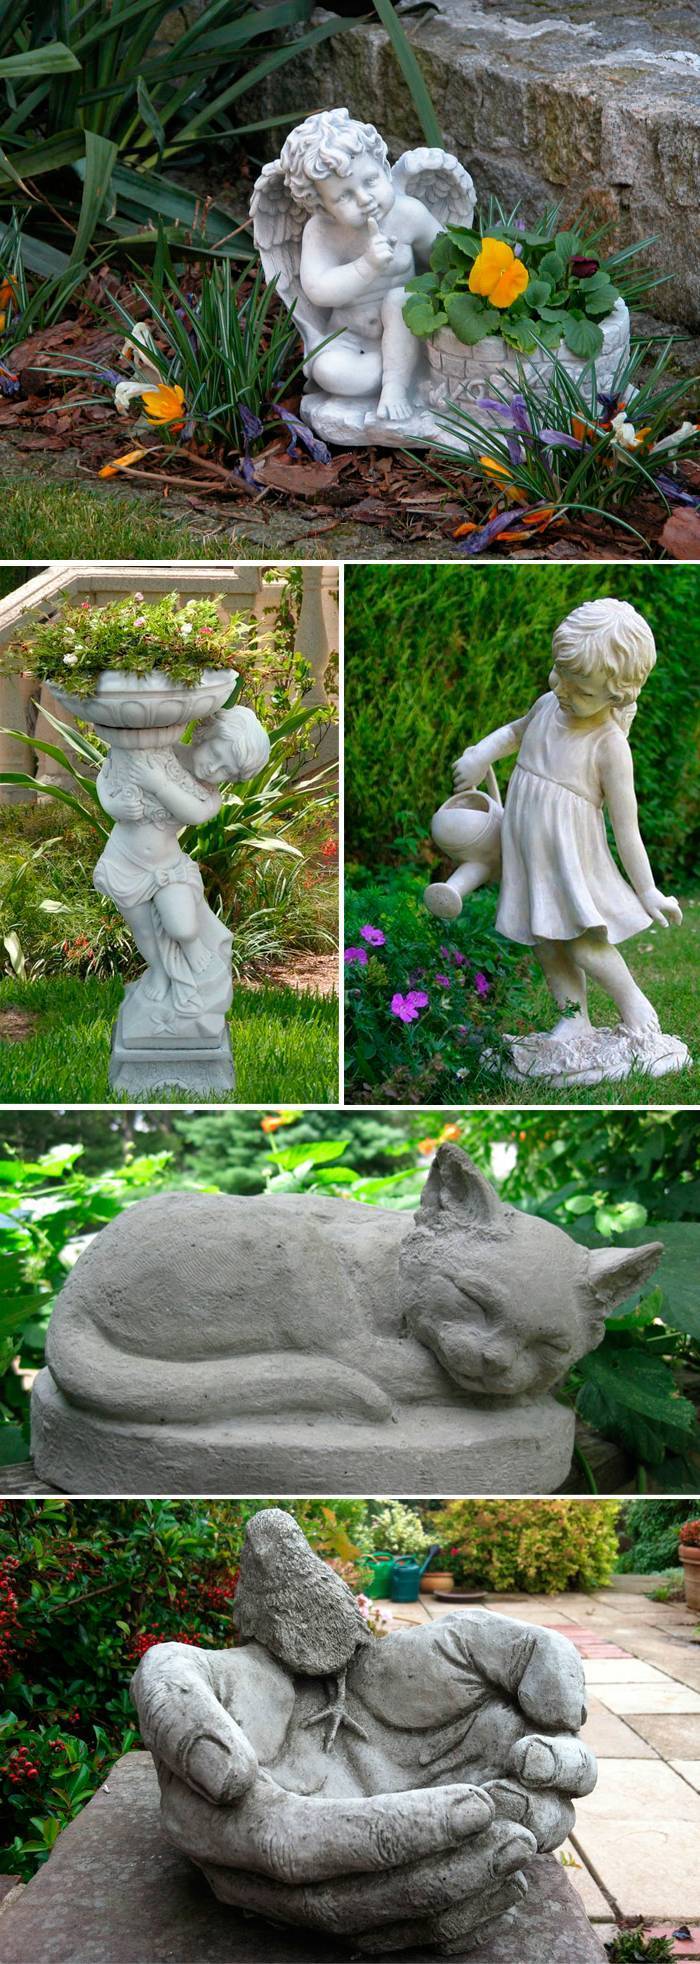 Садовые скульптуры: оригинальные идеи украшения и варианты применения скульптур разных размеров